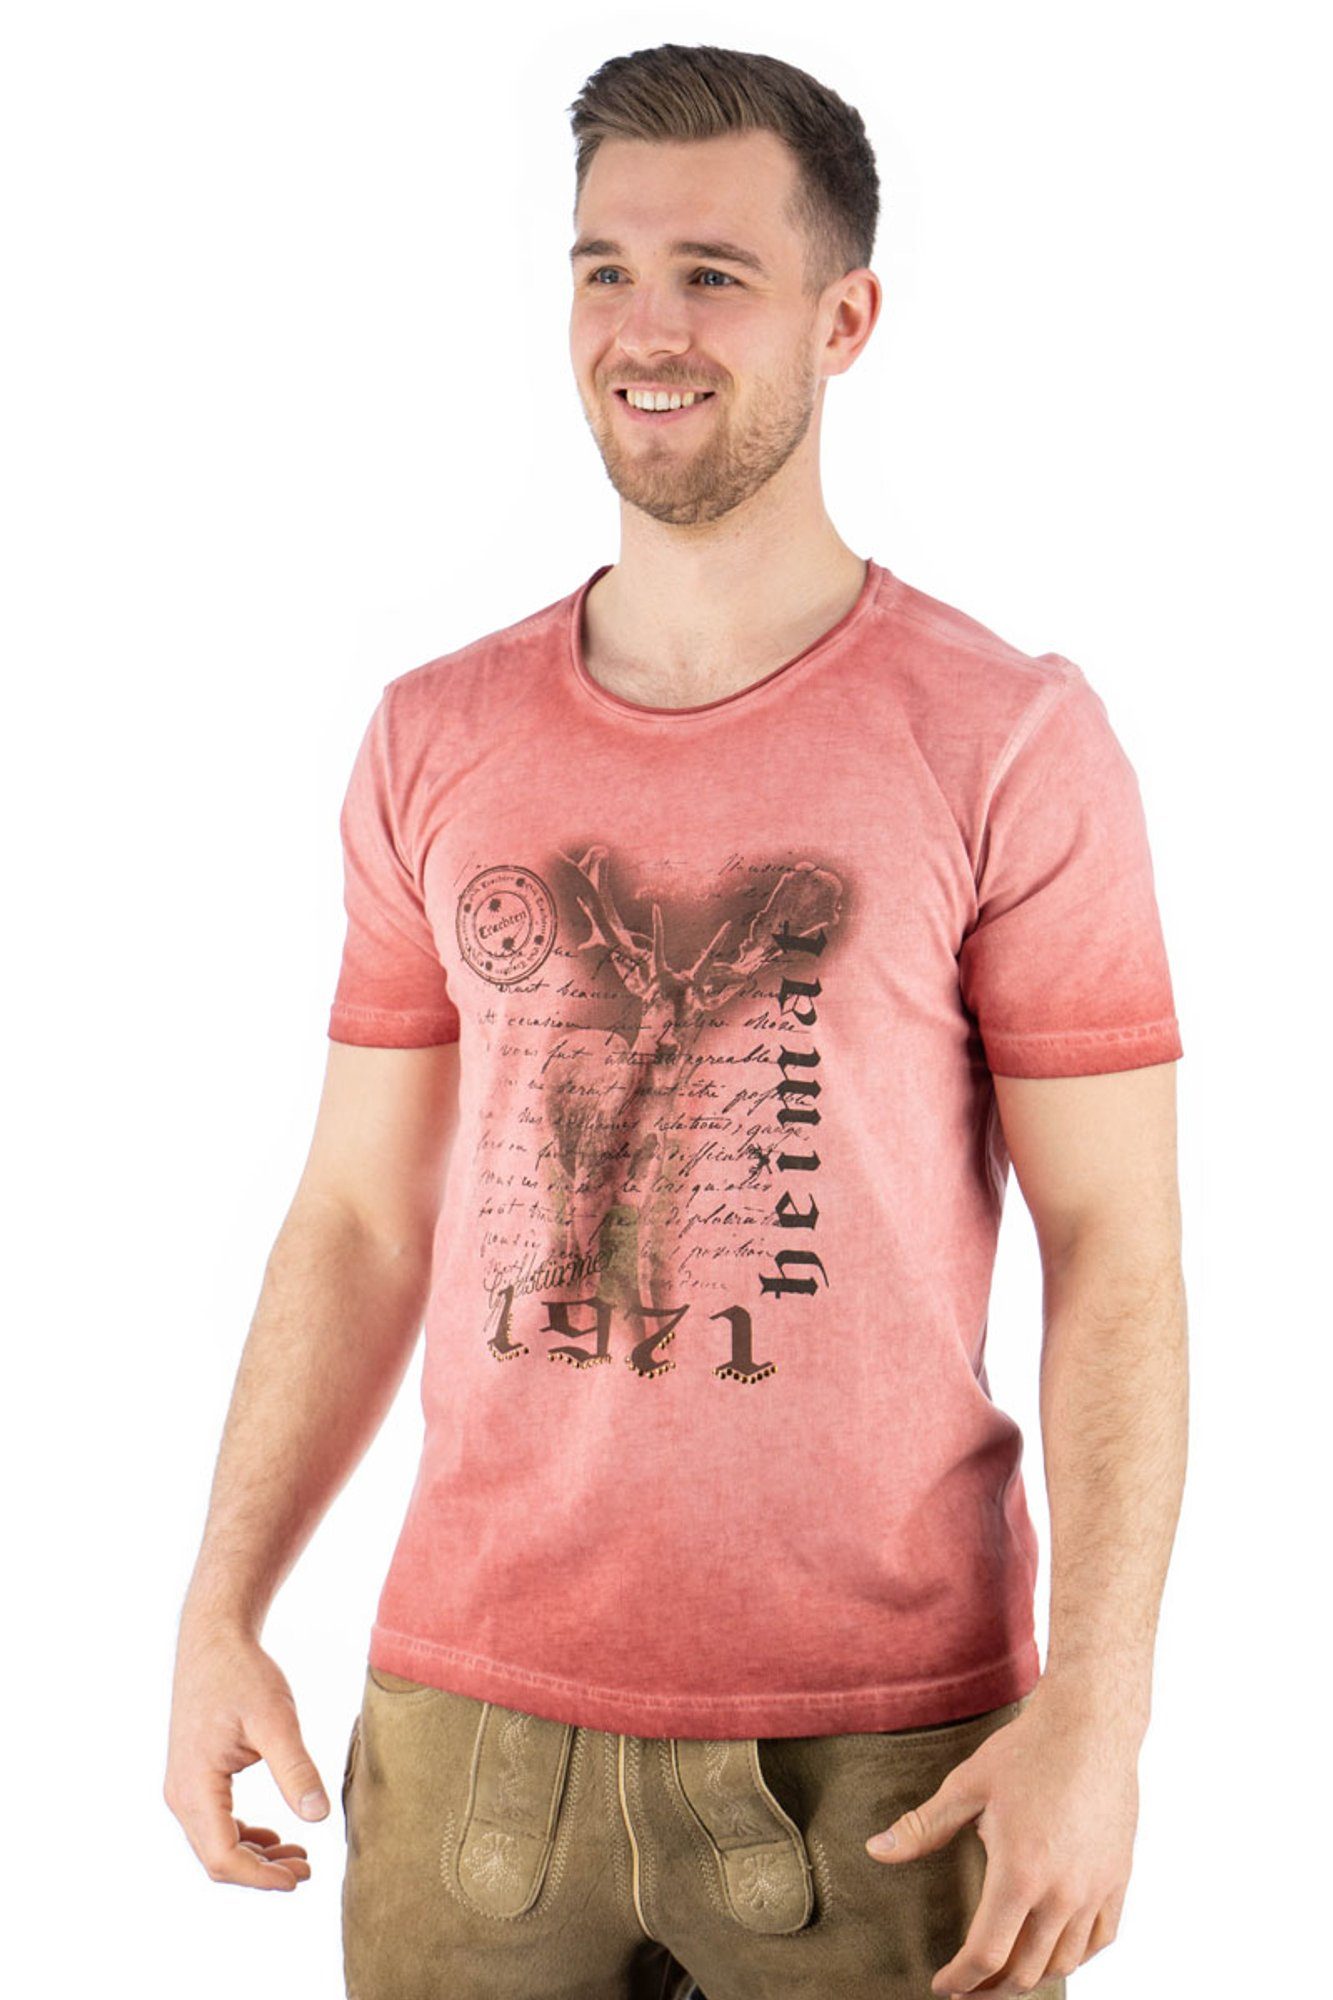 OS-Trachten Trachtenshirt Ofapuo Kurzarm T-Shirt mit Motivdruck weinrot